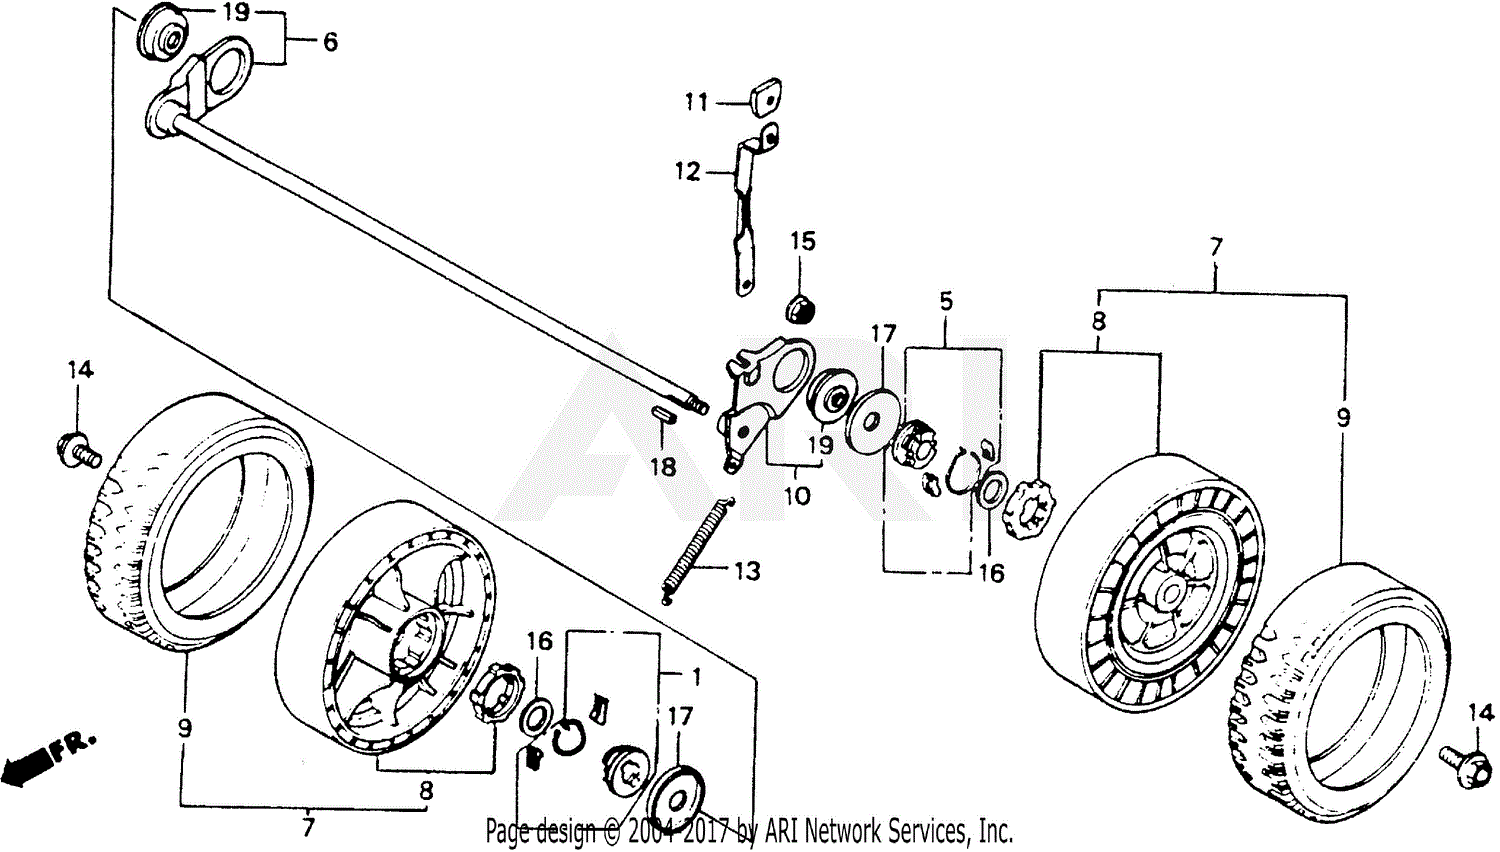 Honda mowers hra 214 schematics #2